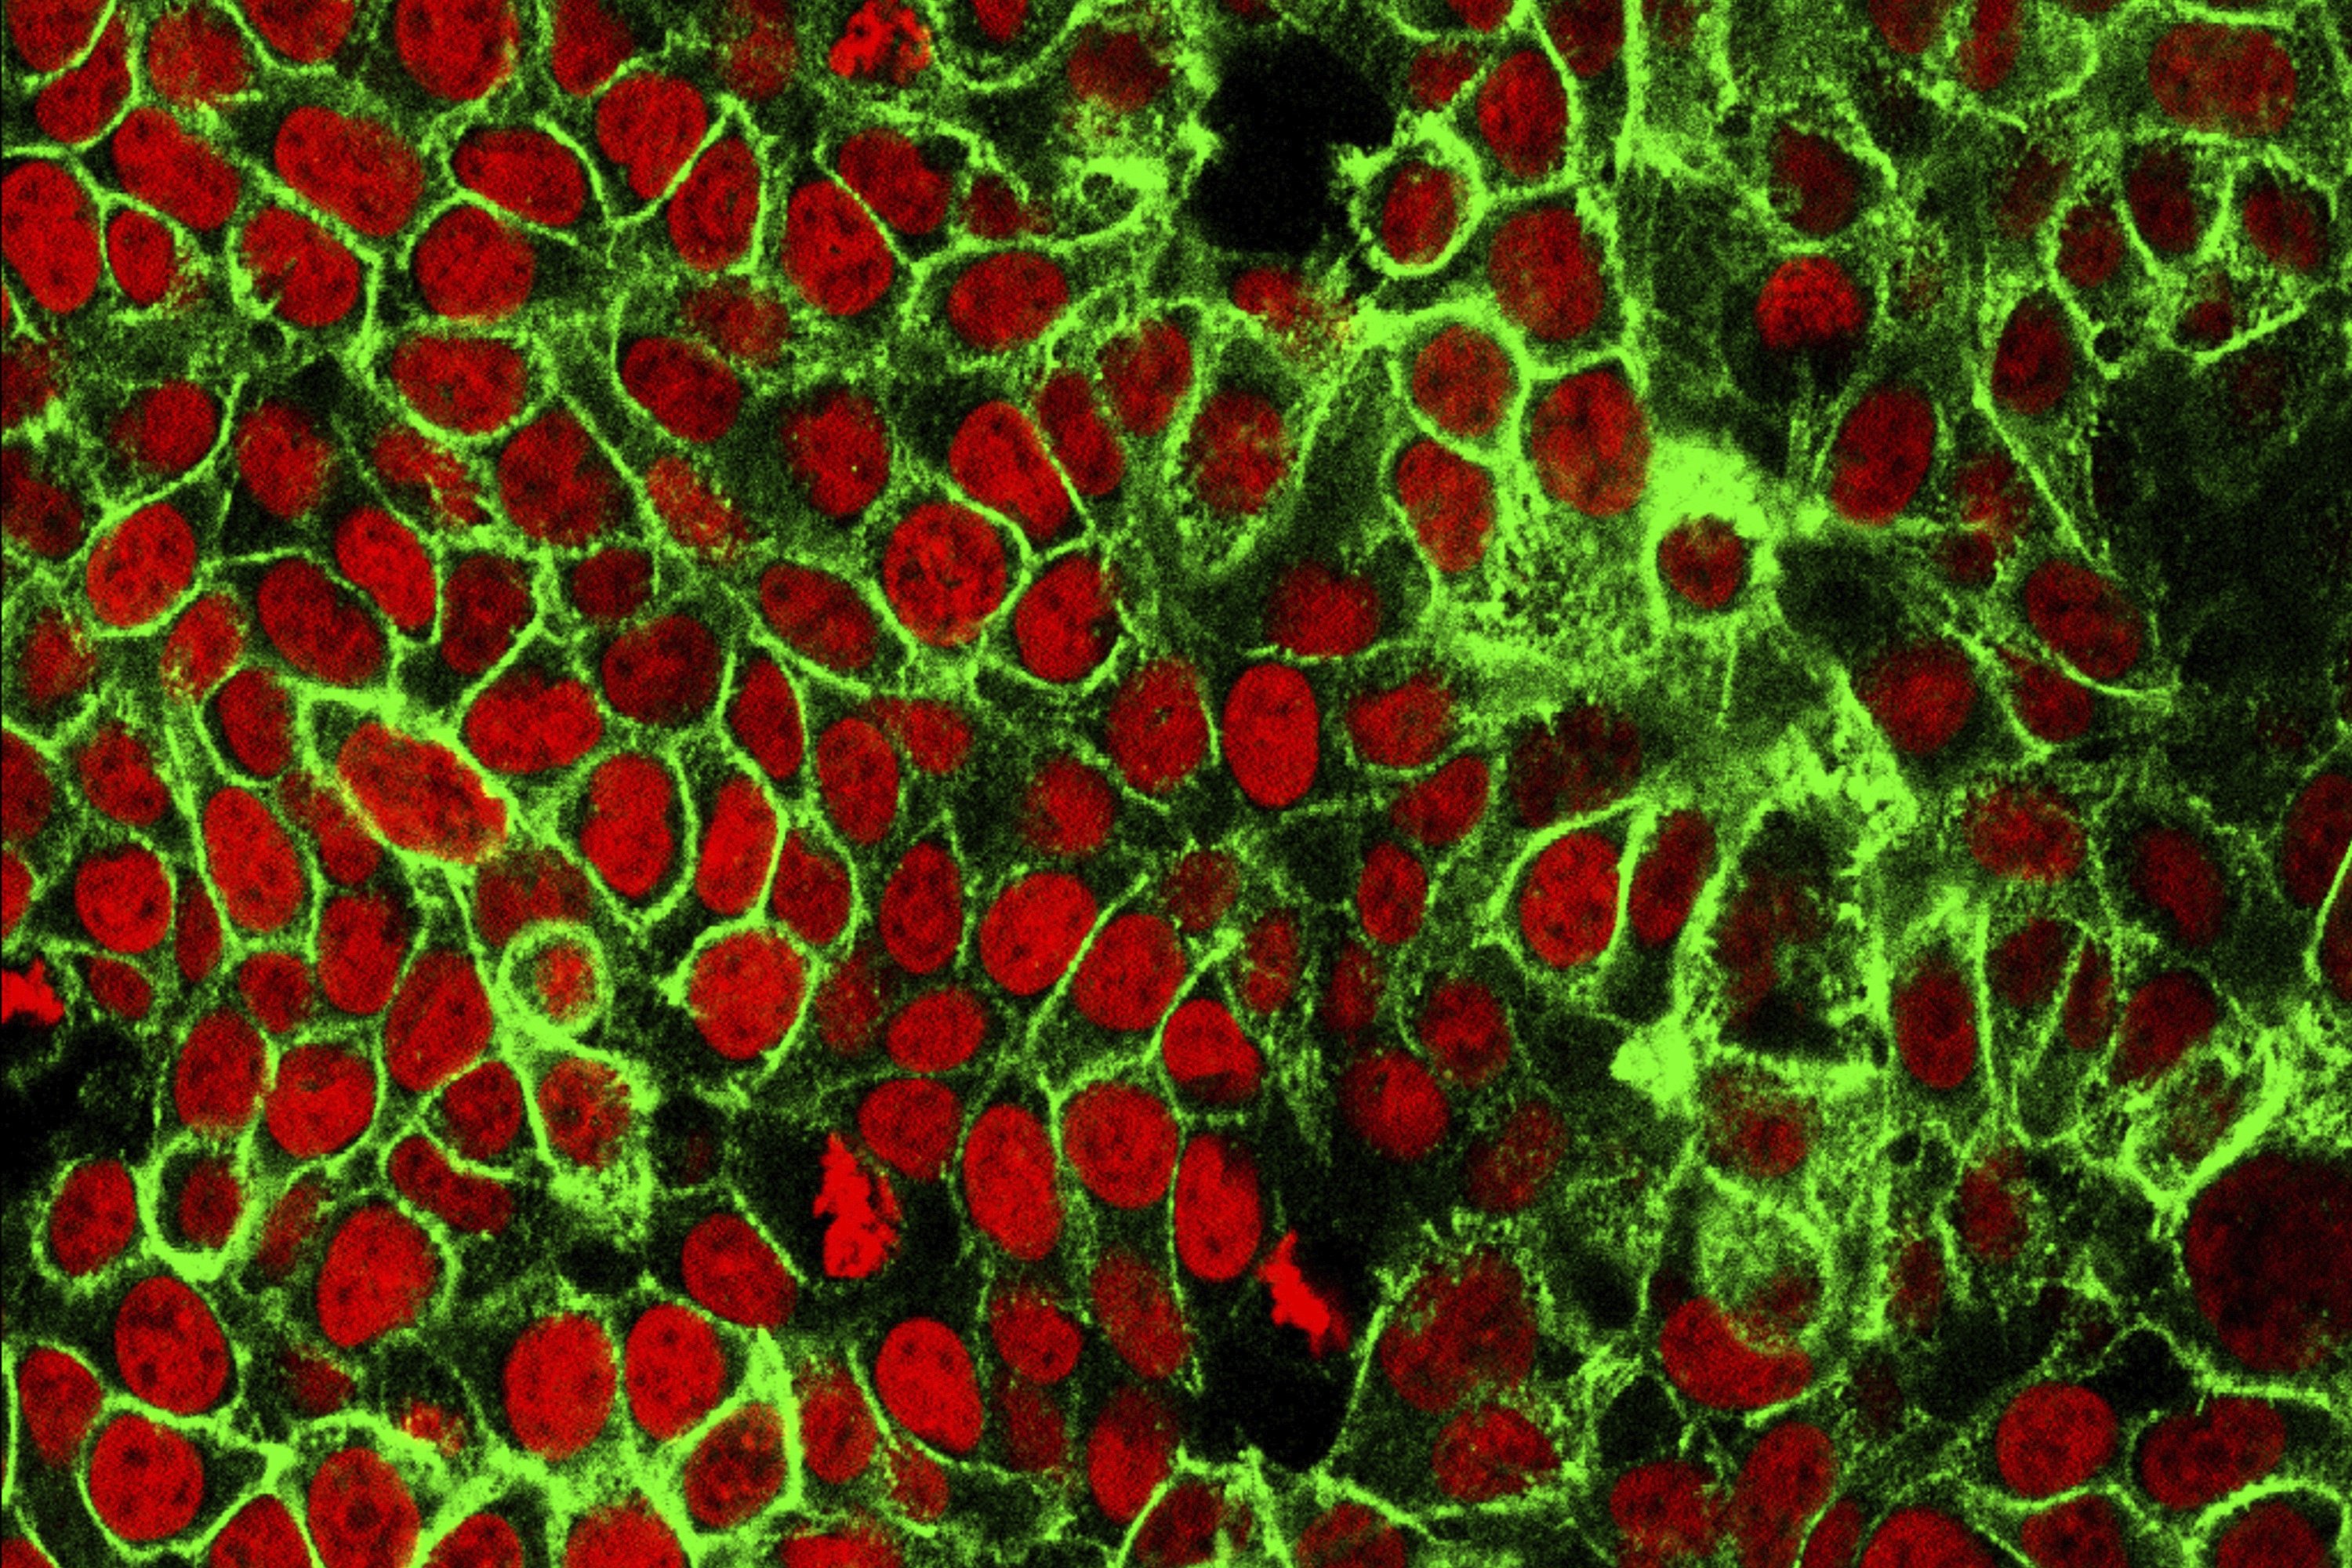 ภาพจากกล้องจุลทรรศน์นี้แสดงเซลล์มะเร็งลำไส้ของมนุษย์ที่มีนิวเคลียสย้อมสีแดง  (ภาพโดยสถาบันมะเร็งแห่งชาติศูนย์วิจัยมะเร็งปี 2558)